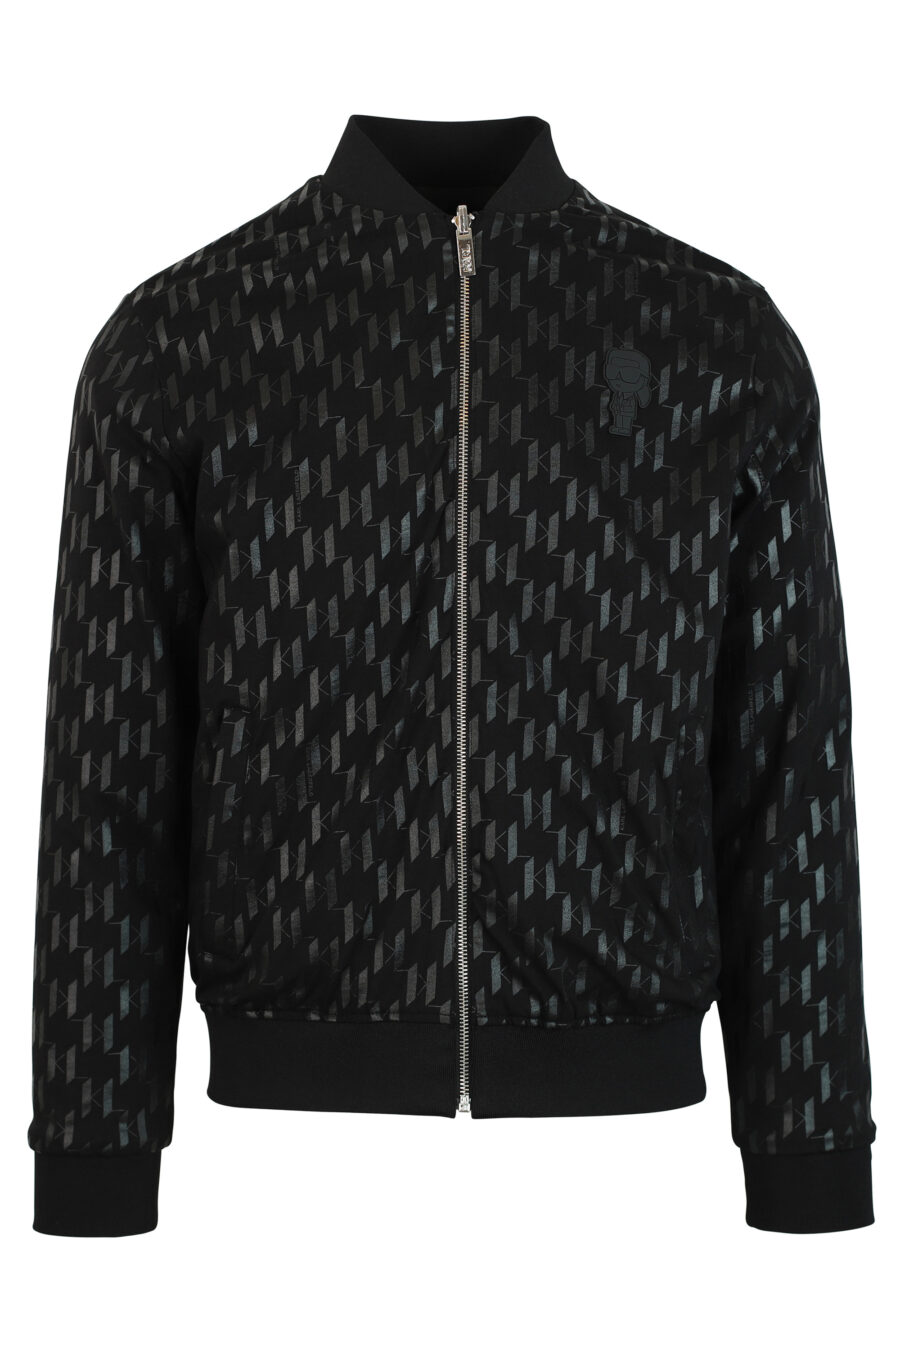 Black reversible bomber jacket with sleeve pocket - 4062226199117 4